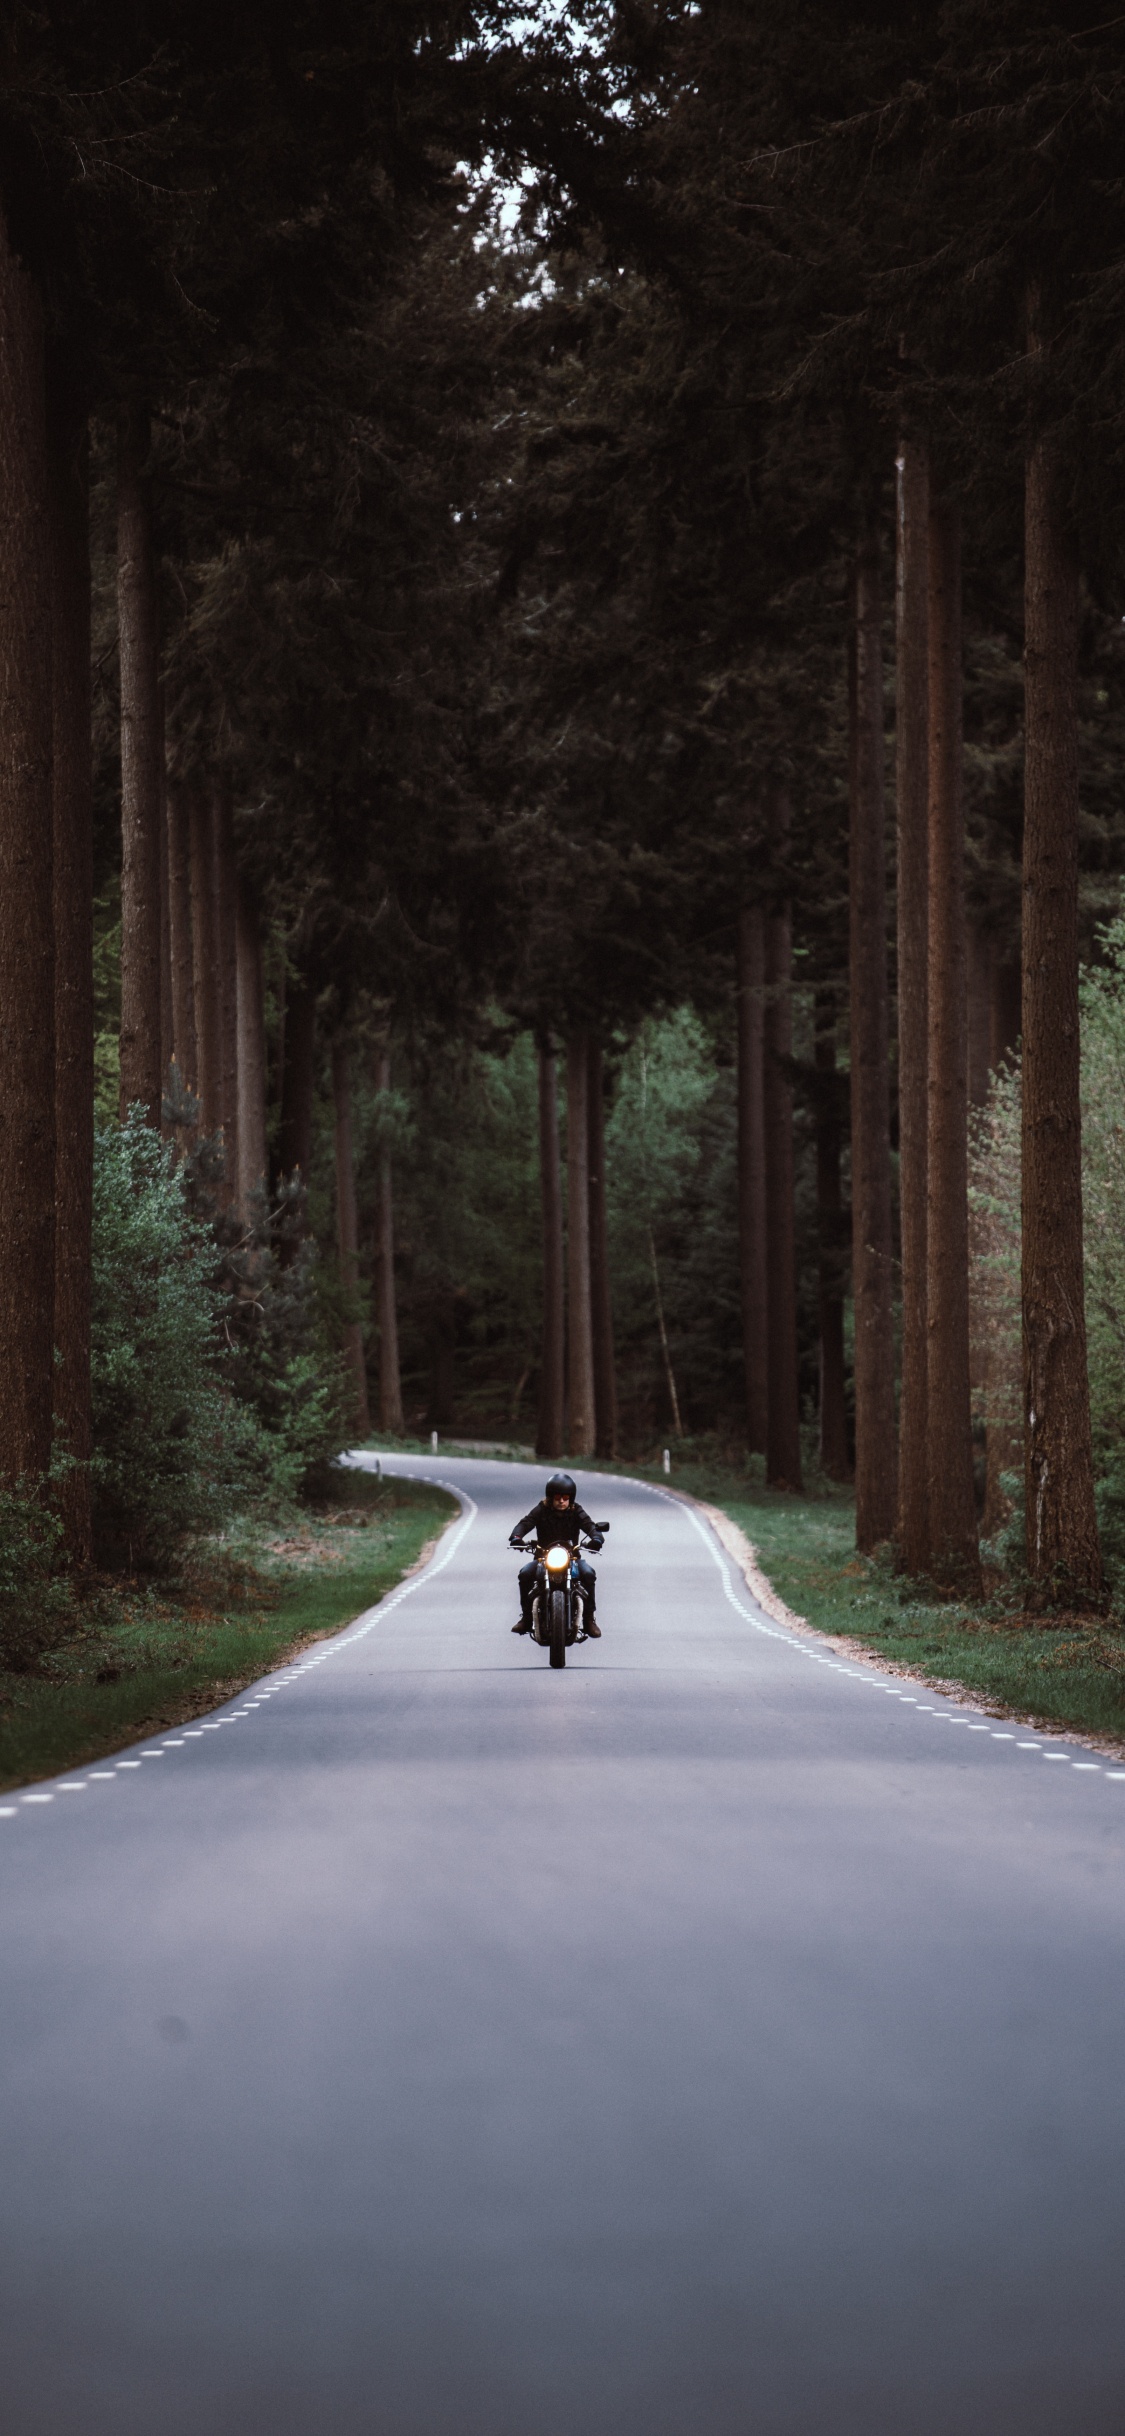 Persona en Motocicleta en la Carretera Entre Árboles Durante el Día. Wallpaper in 1125x2436 Resolution